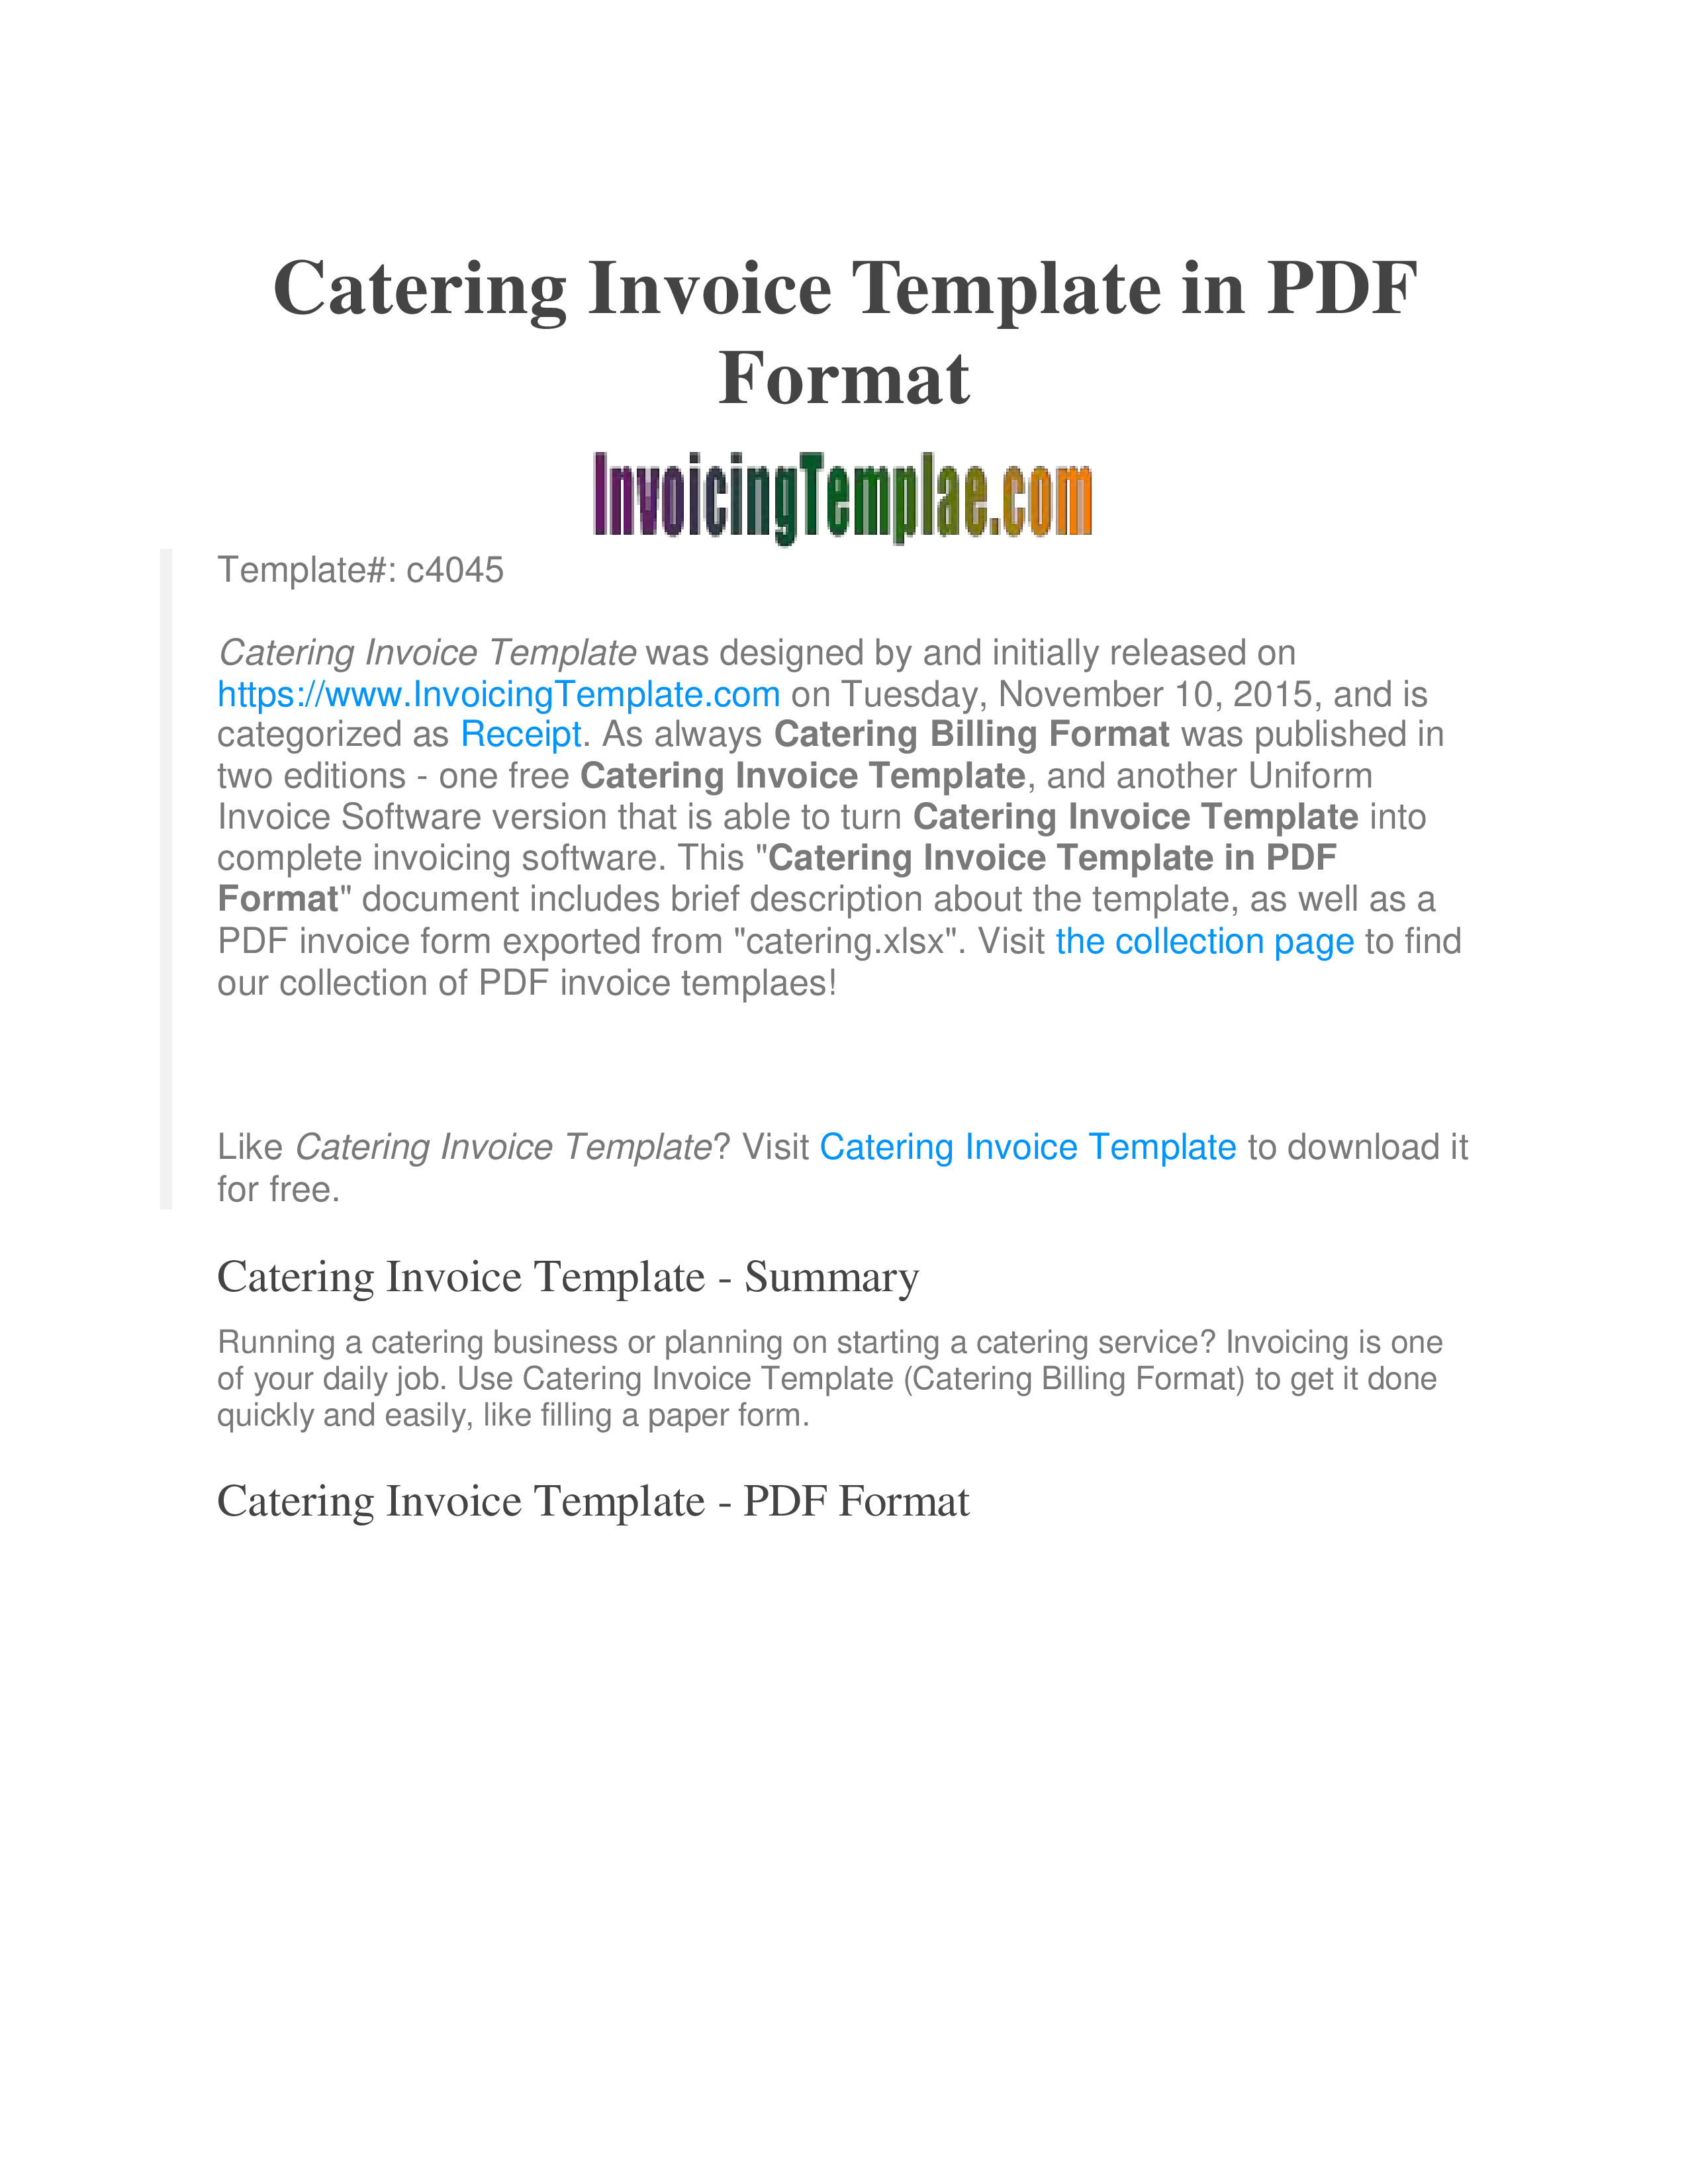 printable catering invoice plantilla imagen principal